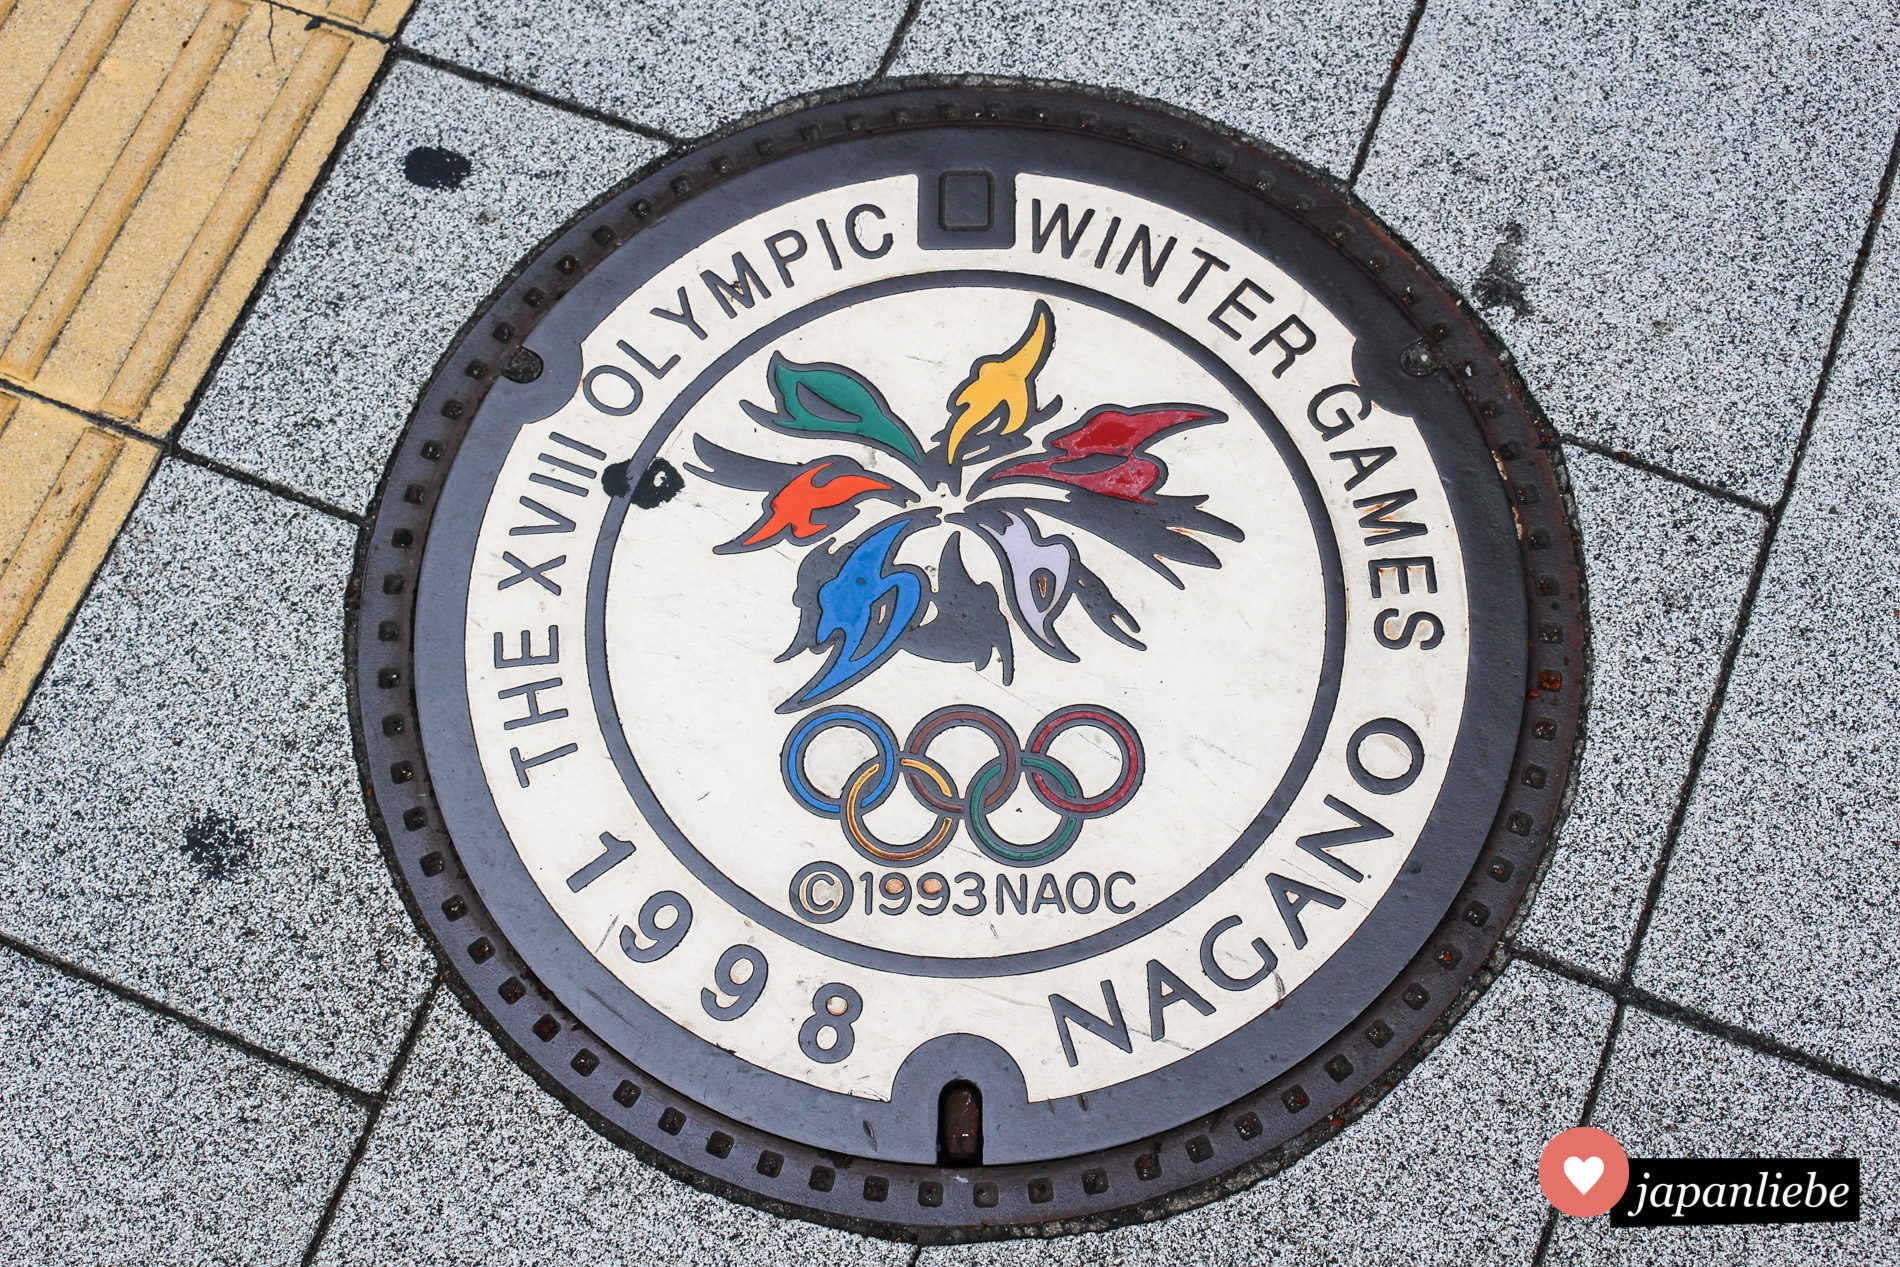 Noch immer erinnern farbige Kanaldeckel an die Olympischen Winterspiele 1998 in Nagano.